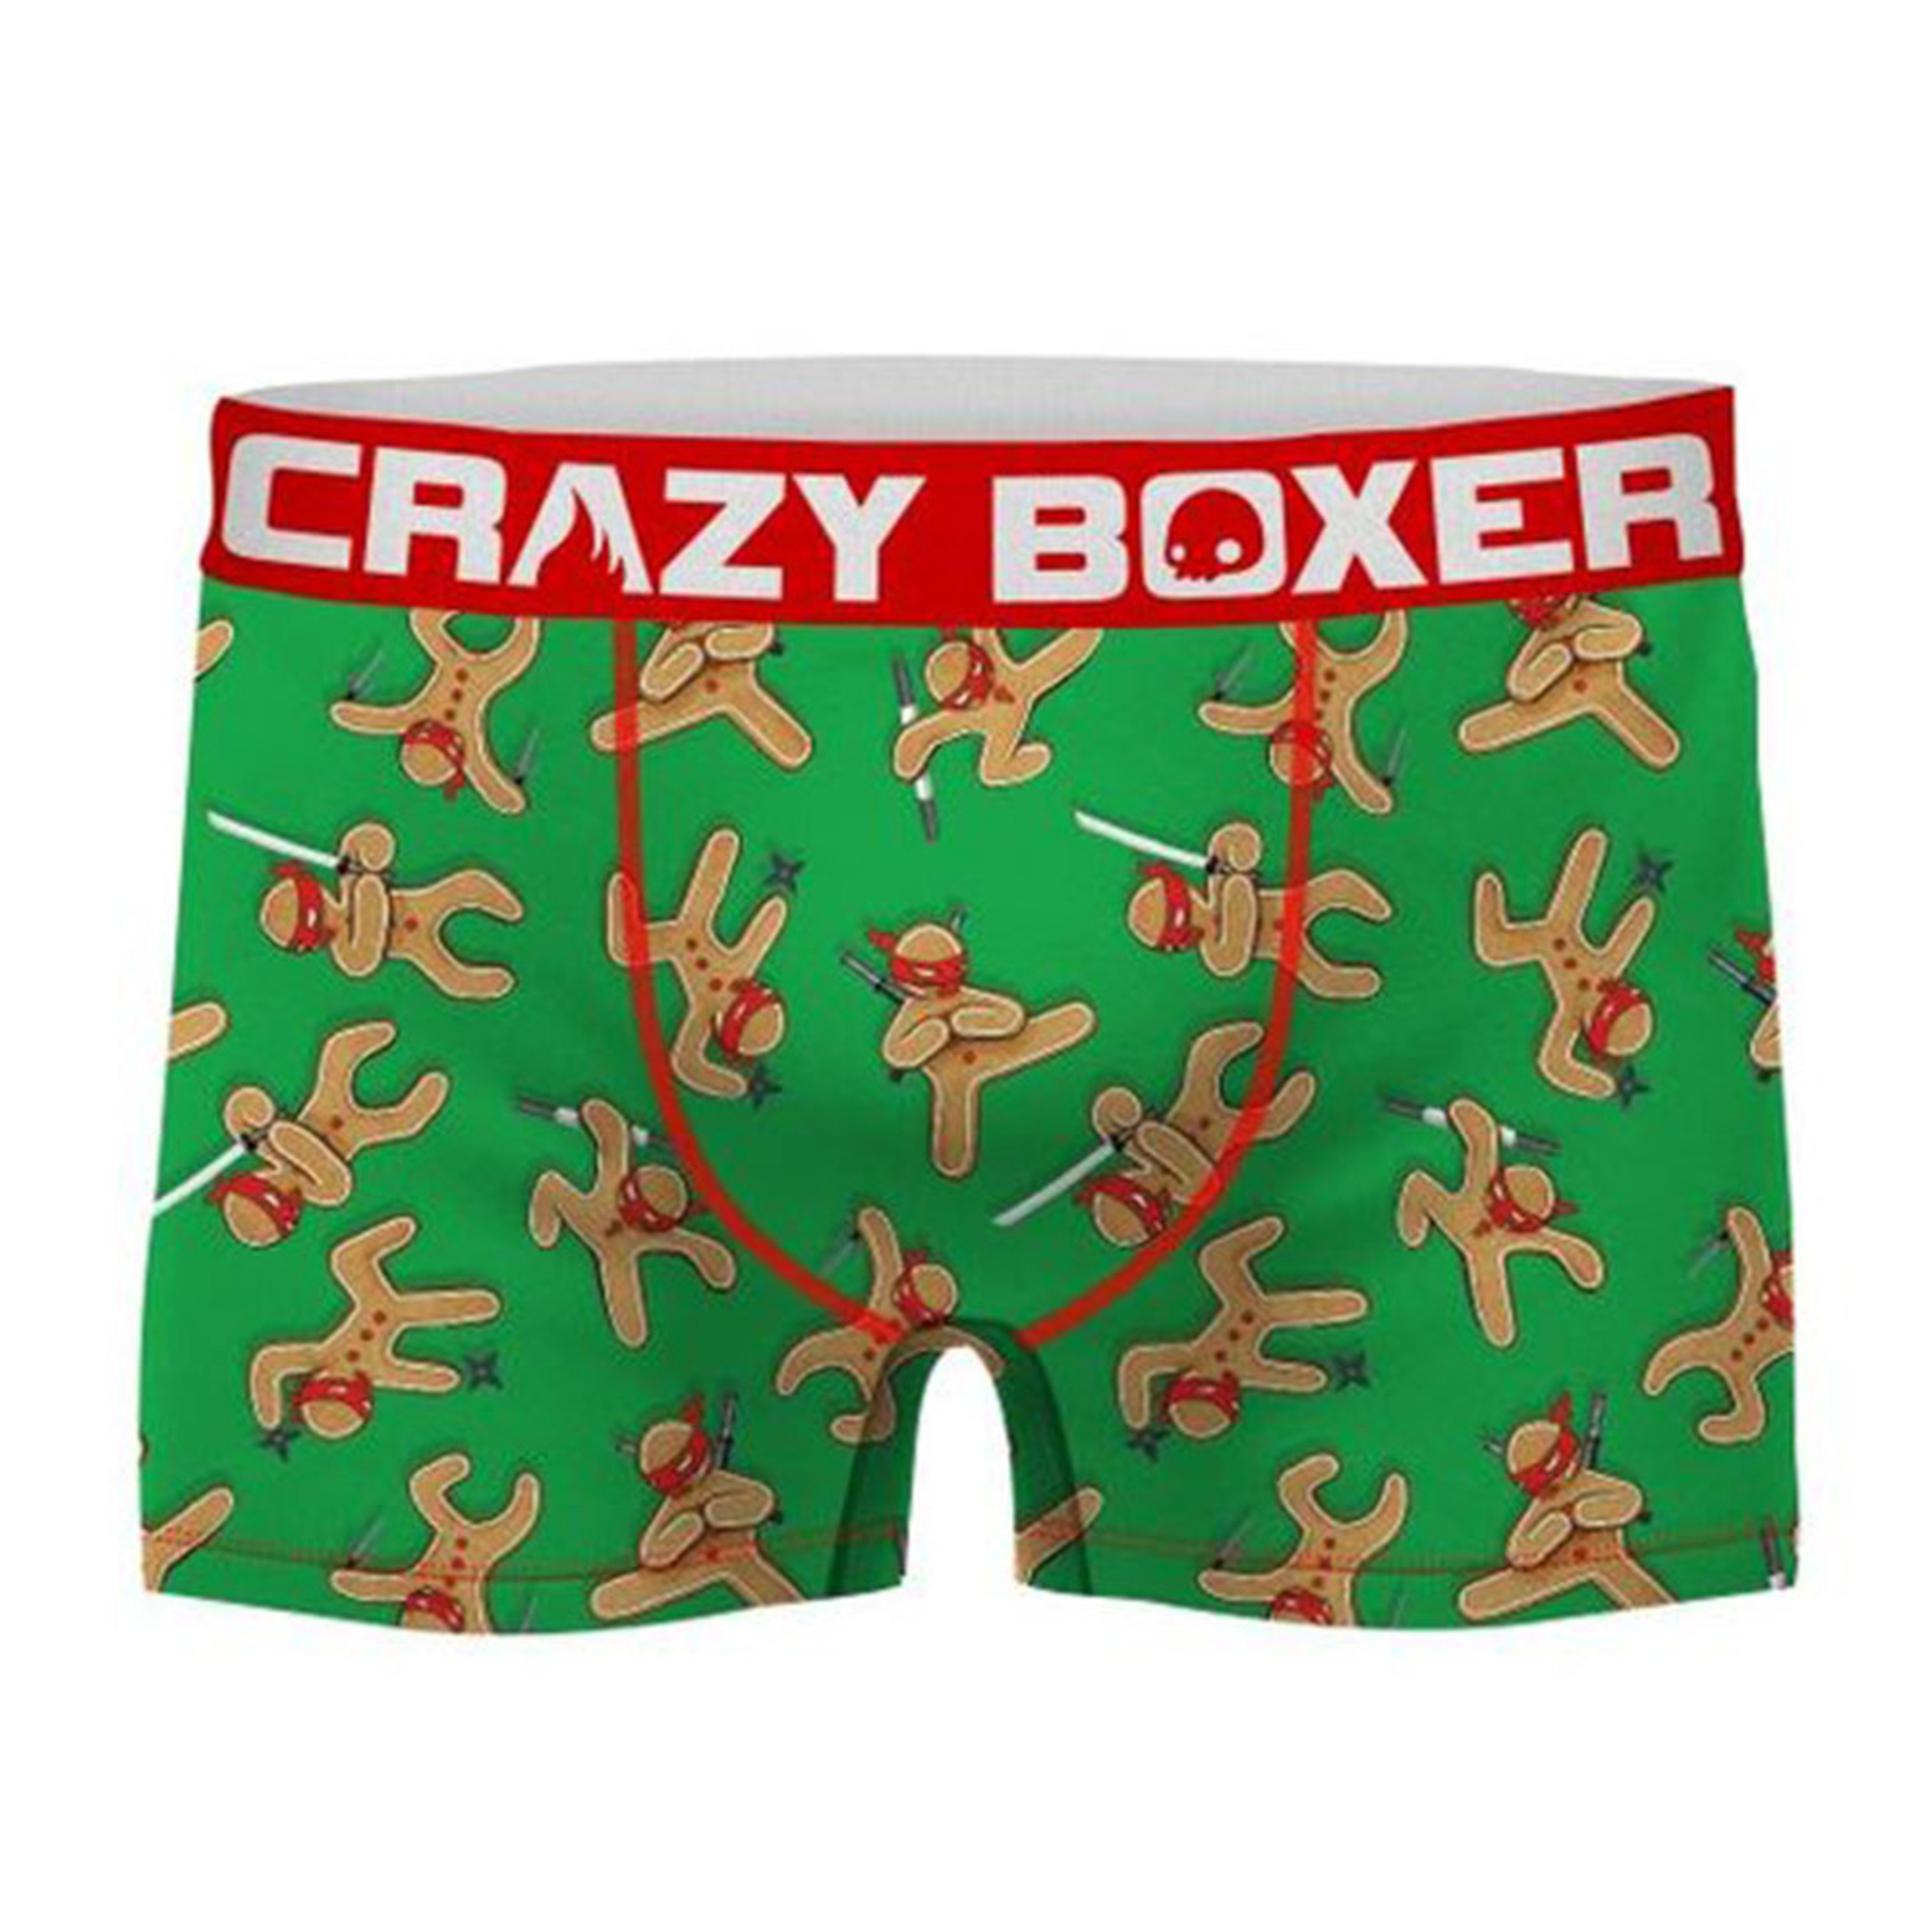 Calzoncillos Ninja Crazy Boxer Para Hombre - Multicolor  MKP